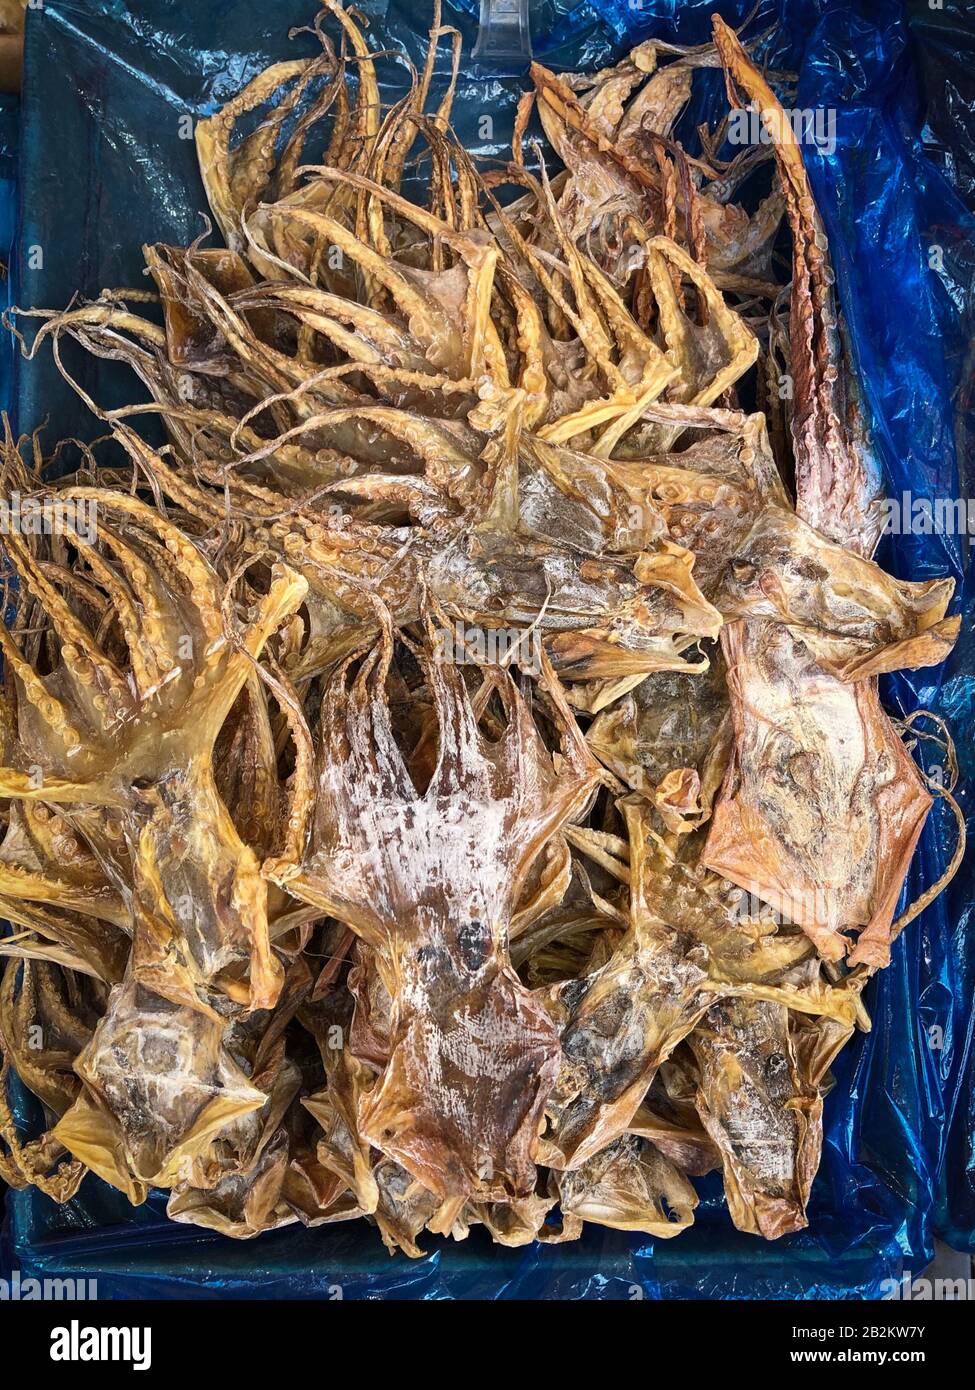 Getrocknetes Tintenfisch auf dem Lebensmittelmarkt in China, trockene Meeresfrüchte - Stockfoto